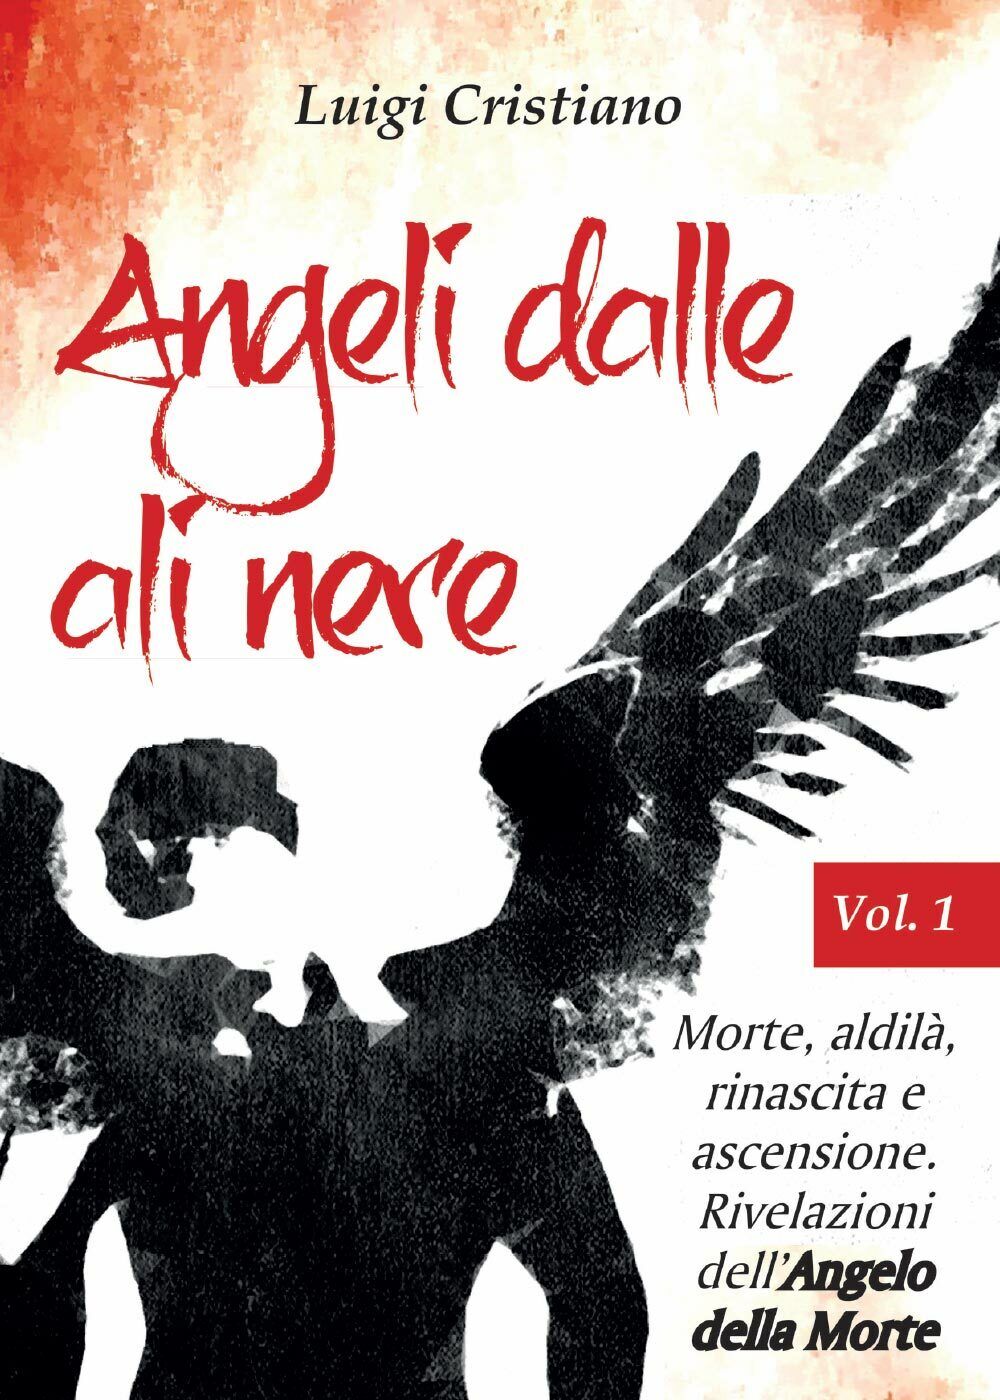 Angeli dalle ali nere. Vol.1 - Morte, aldil?, rinascita e ascensione.  libro usato